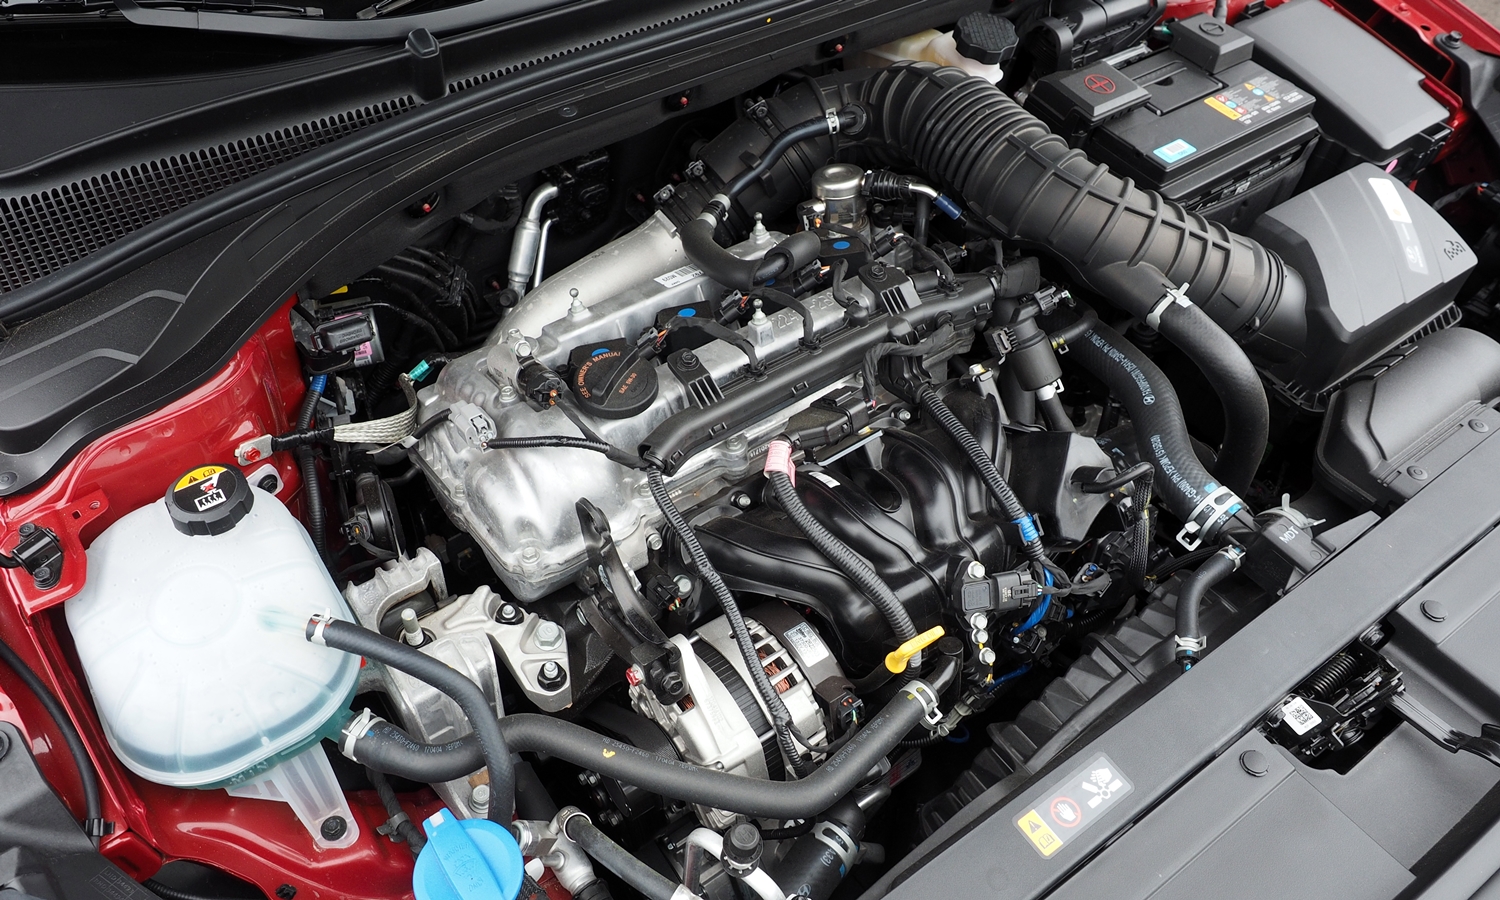 Hyundai Elantra GT Photos: Hyundai Elantra GT Sport engine uncovered